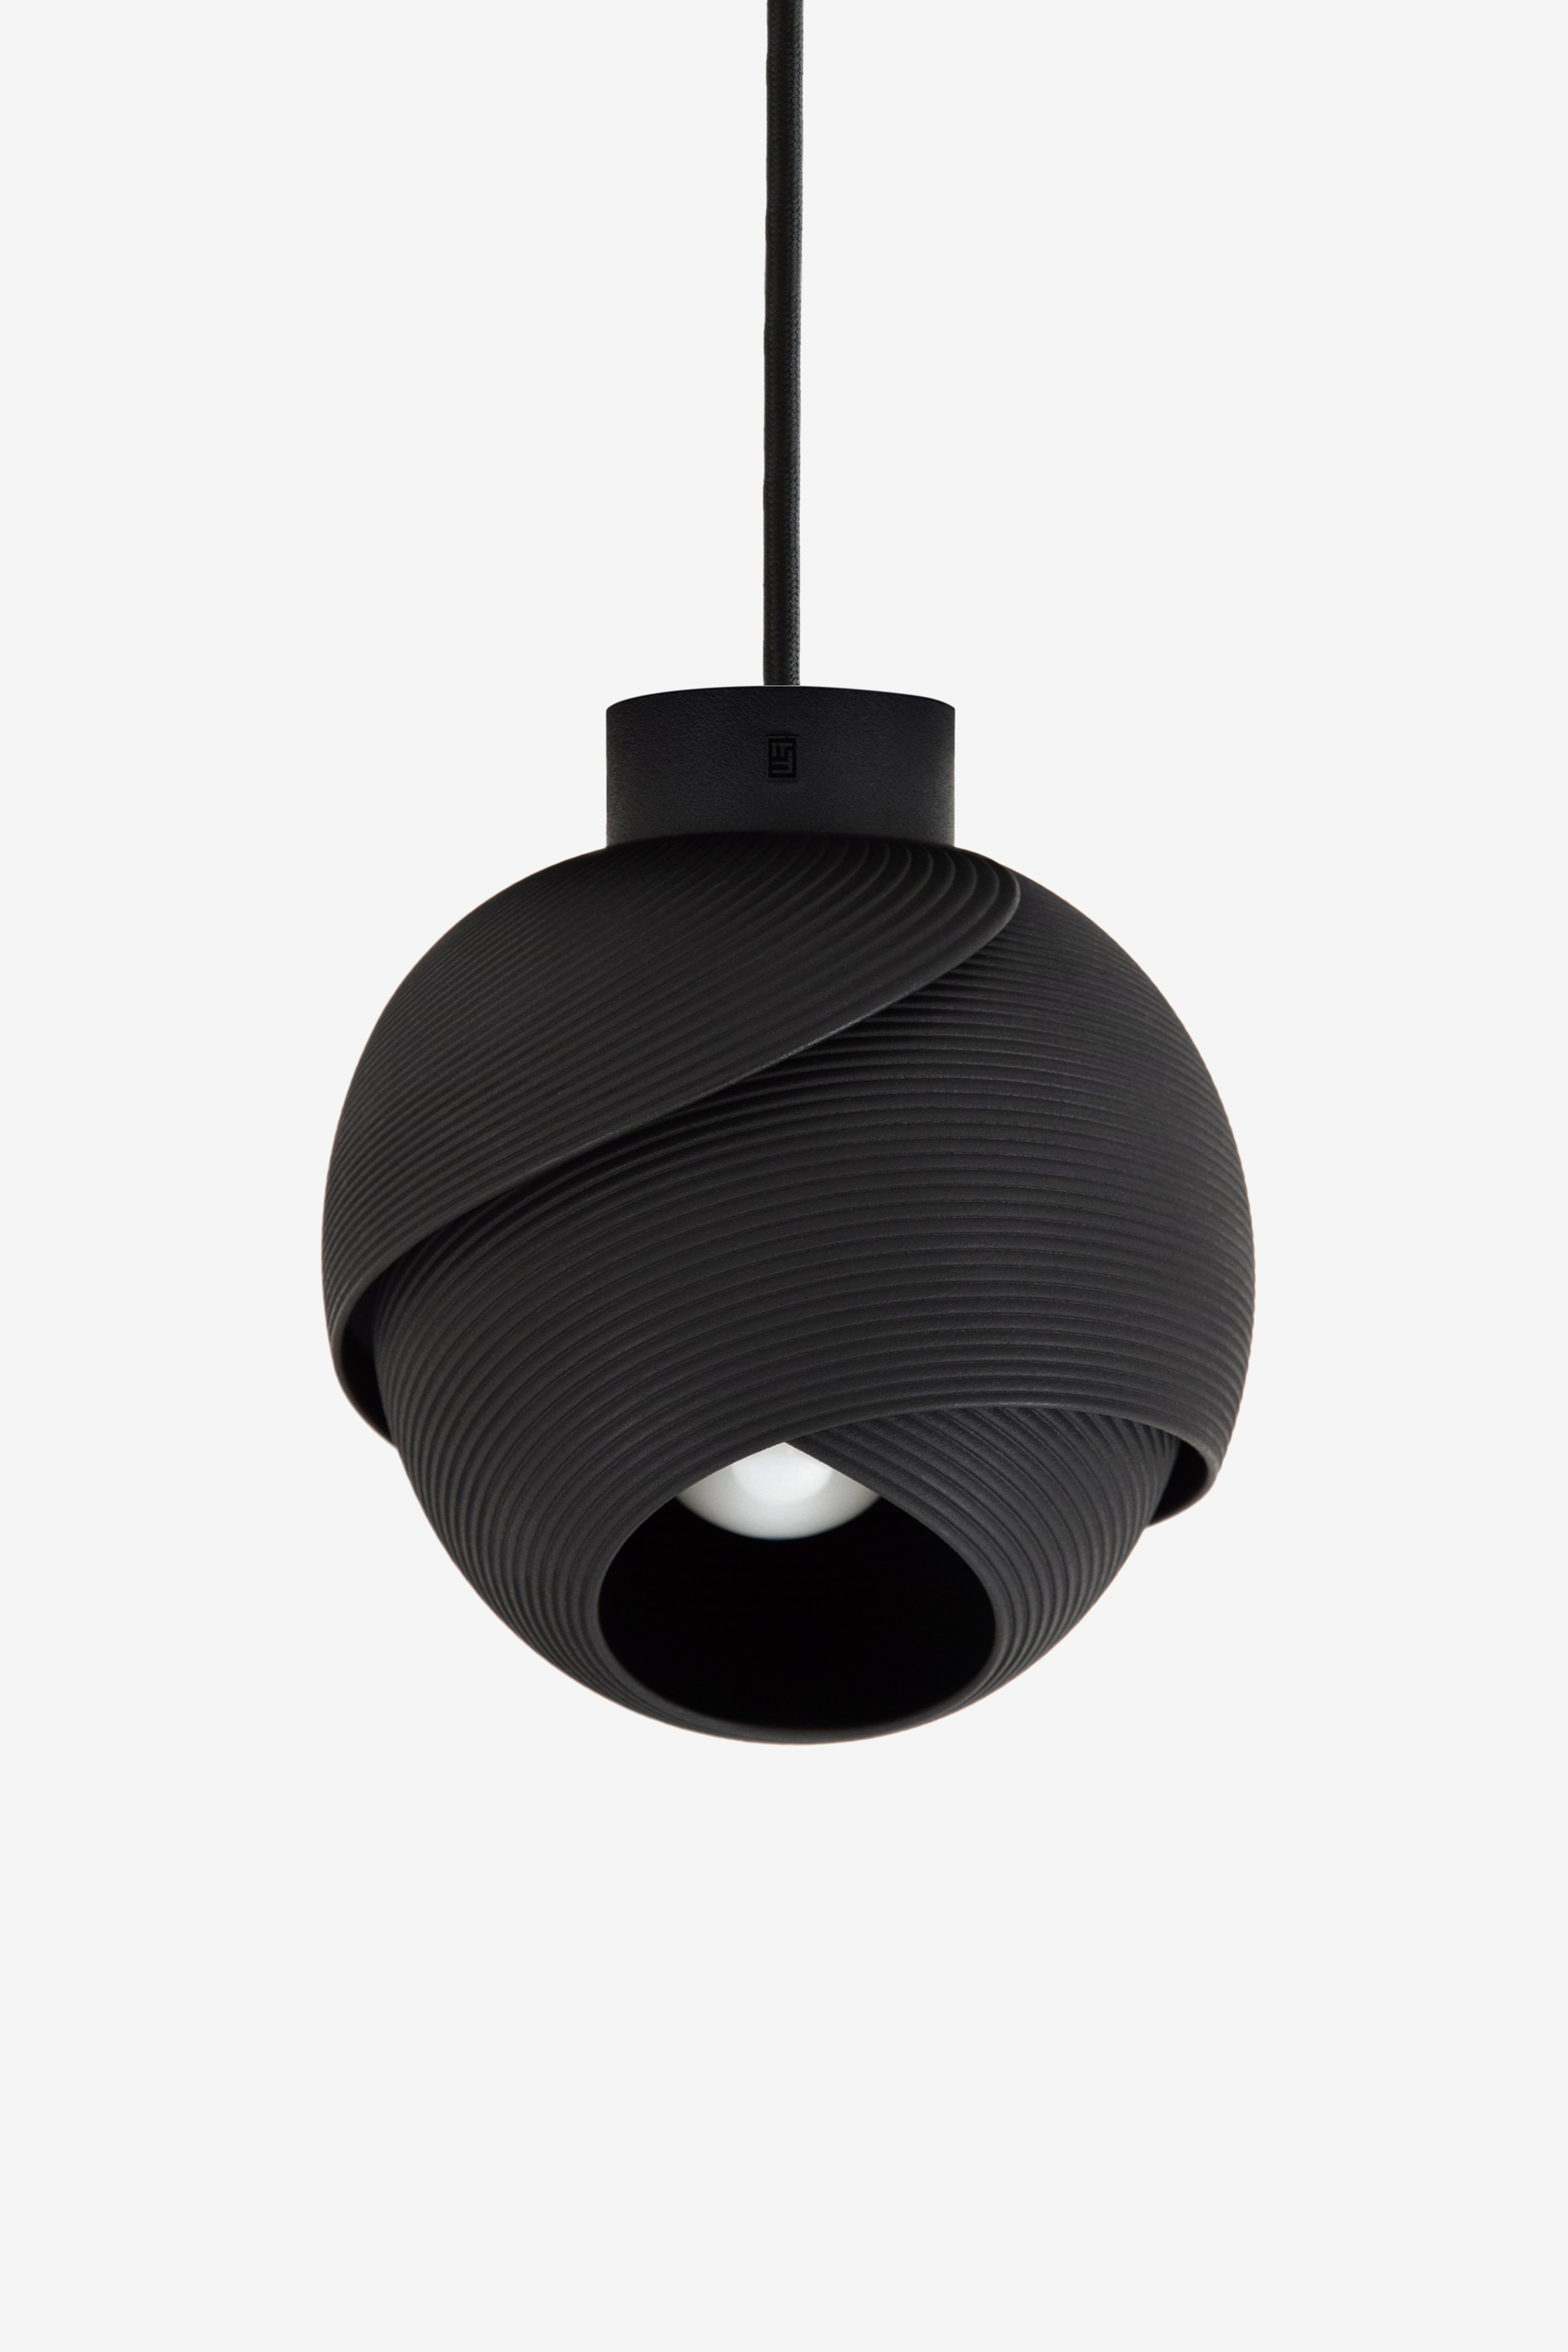 Fold Pendant Lamp, Design by Matthijs Kok for Freshfiber